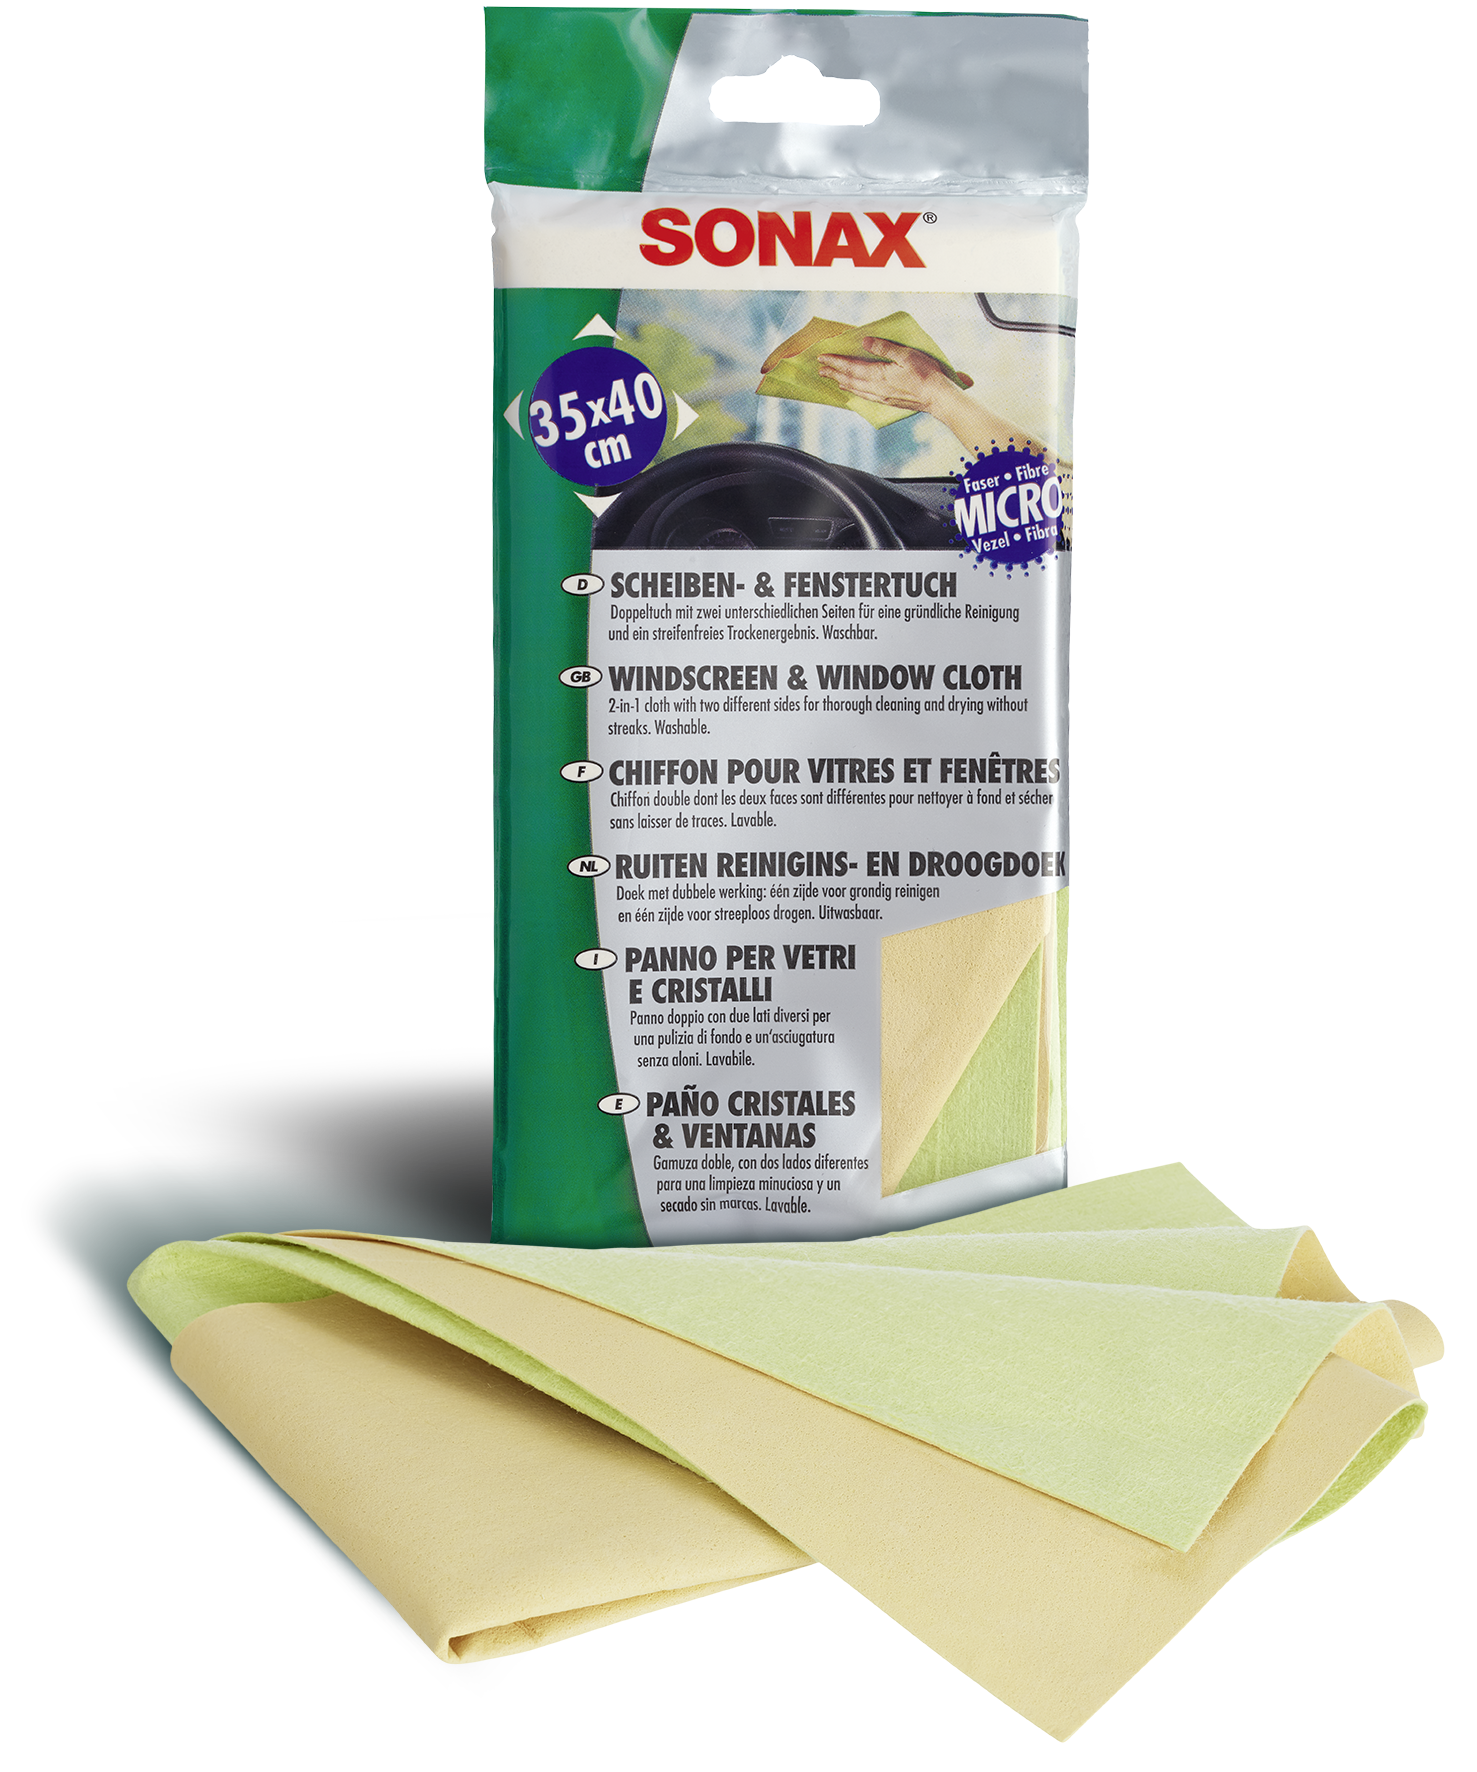 SONAX Scheiben- & Fenstertuch 416700